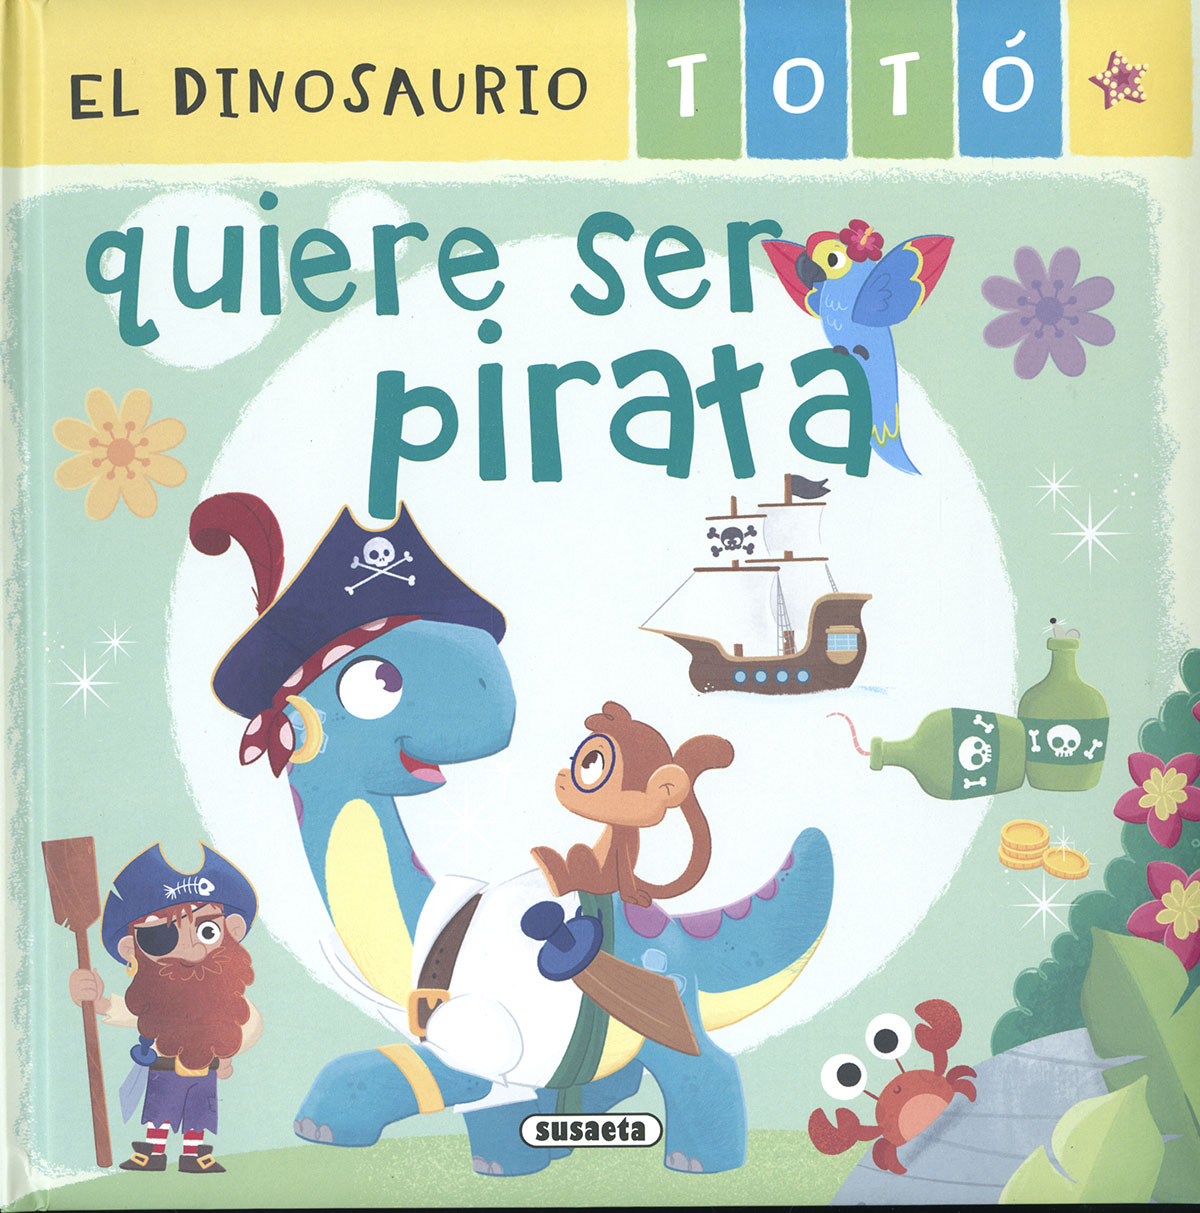 El dinosaurio Totó quiere ser pirata